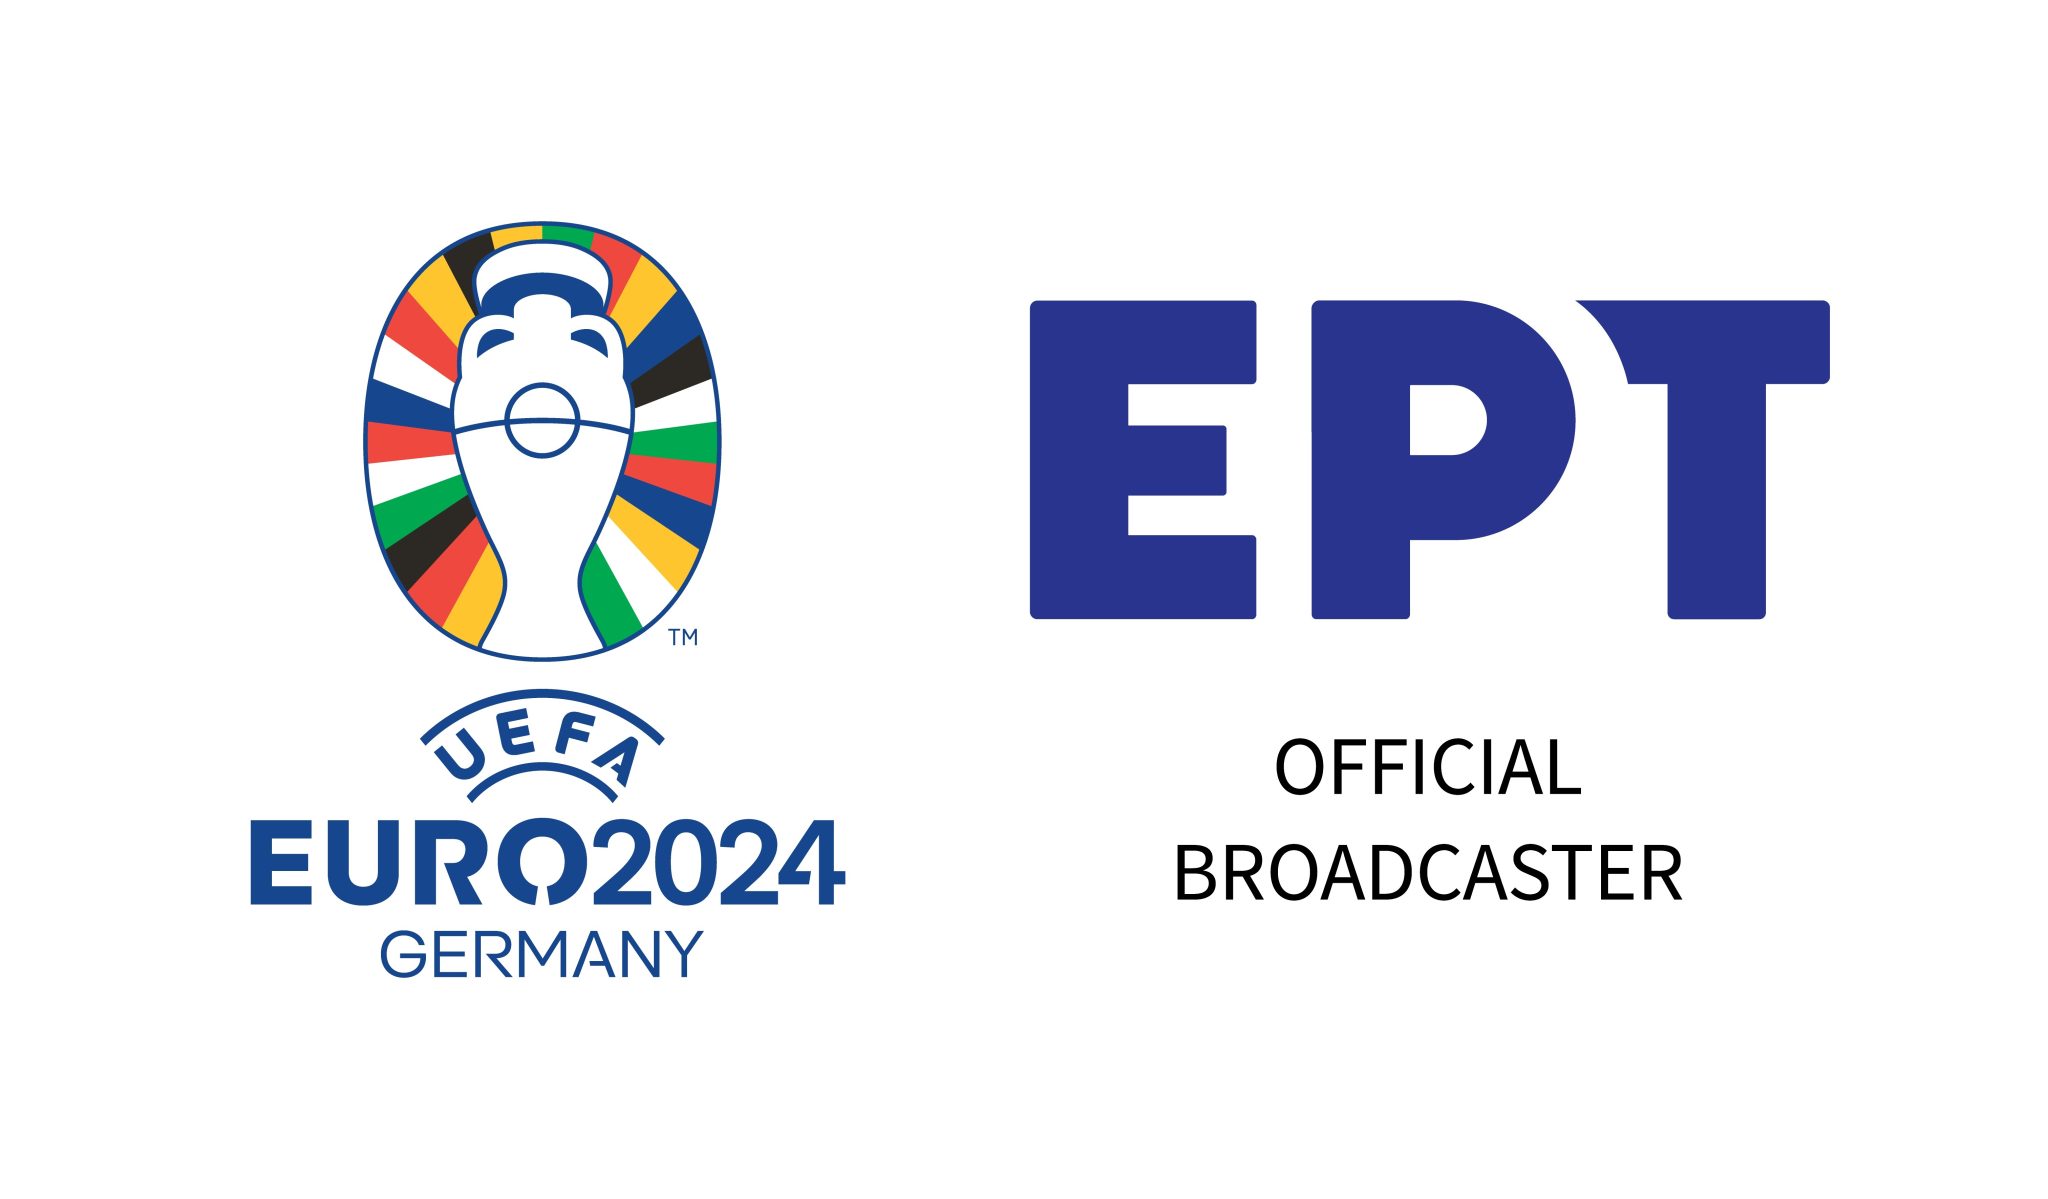 EURO 2024: Η μεγάλη γιορτή του Ευρωπαϊκού Ποδοσφαίρου αρχίζει στην ΕΡΤ! – ΔΕΙΤΕ ΤΟ ΠΡΟΓΡΑΜΜΑ